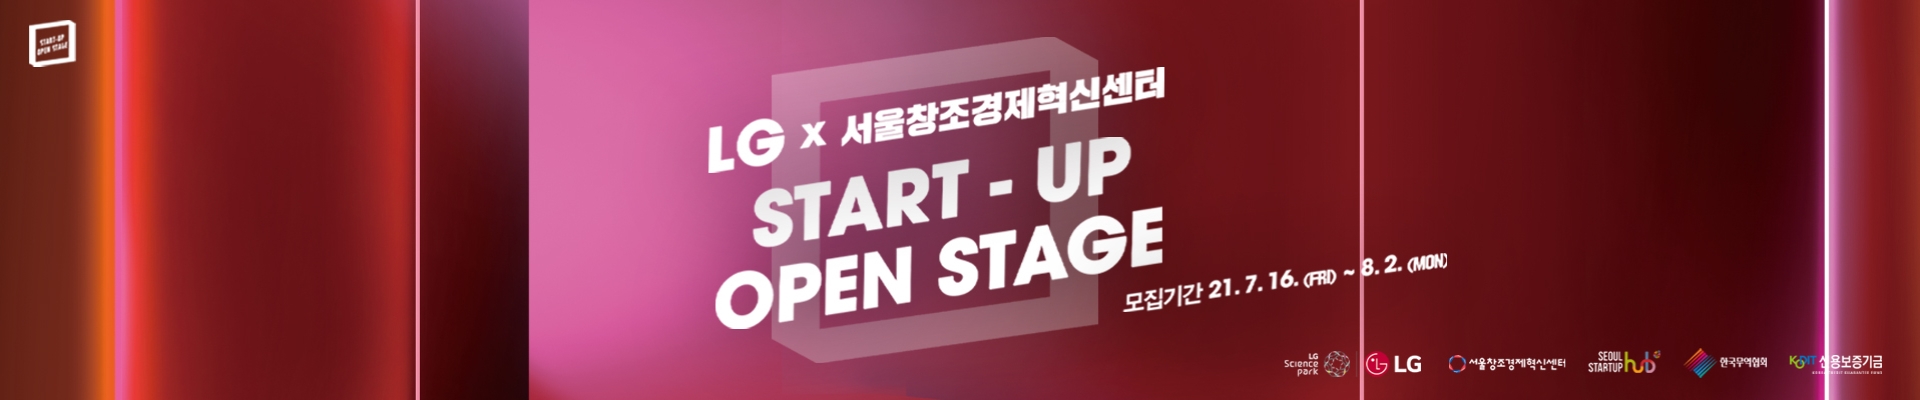 LG x 서울창조경제혁신센터 Startup open stage